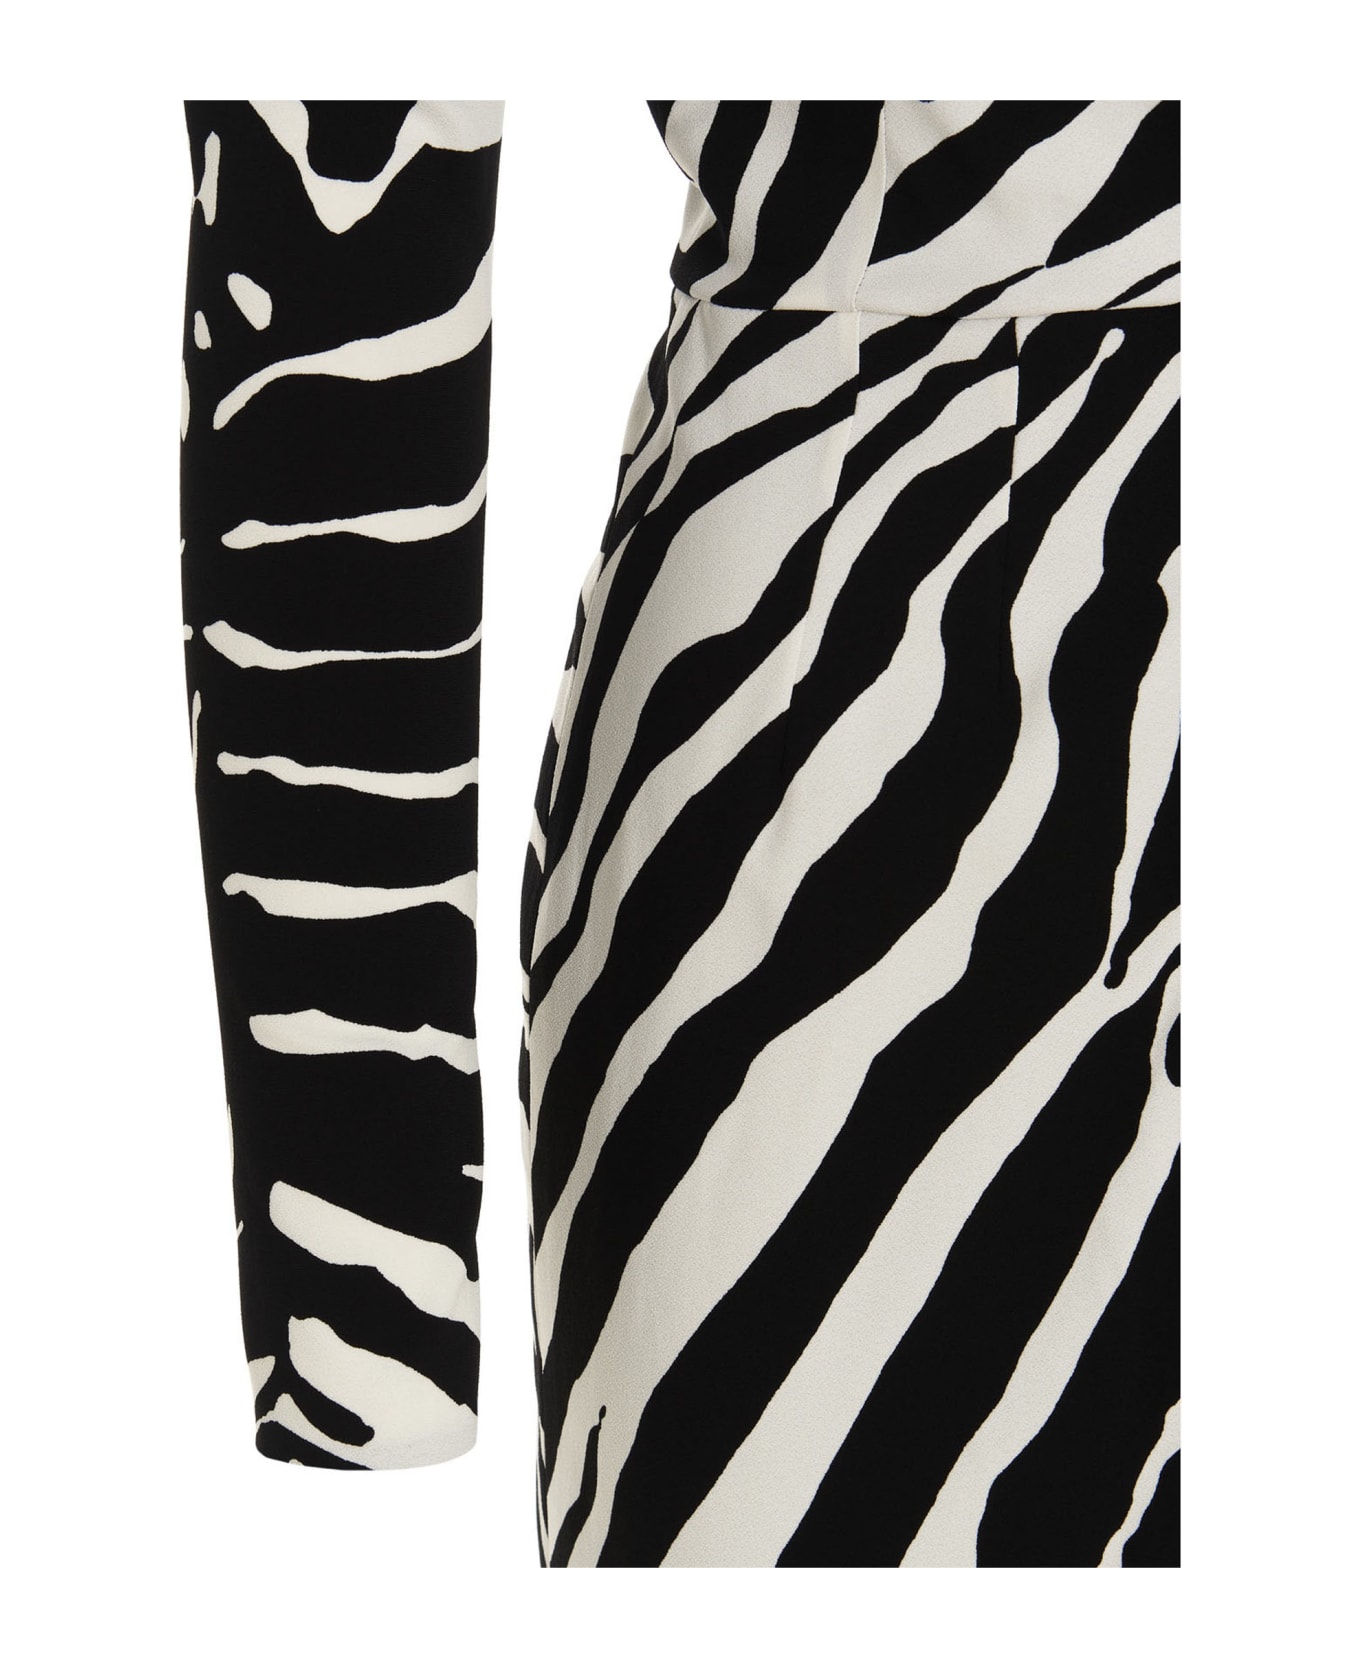 Dolce & Gabbana Zebra Dress - White/Black ワンピース＆ドレス